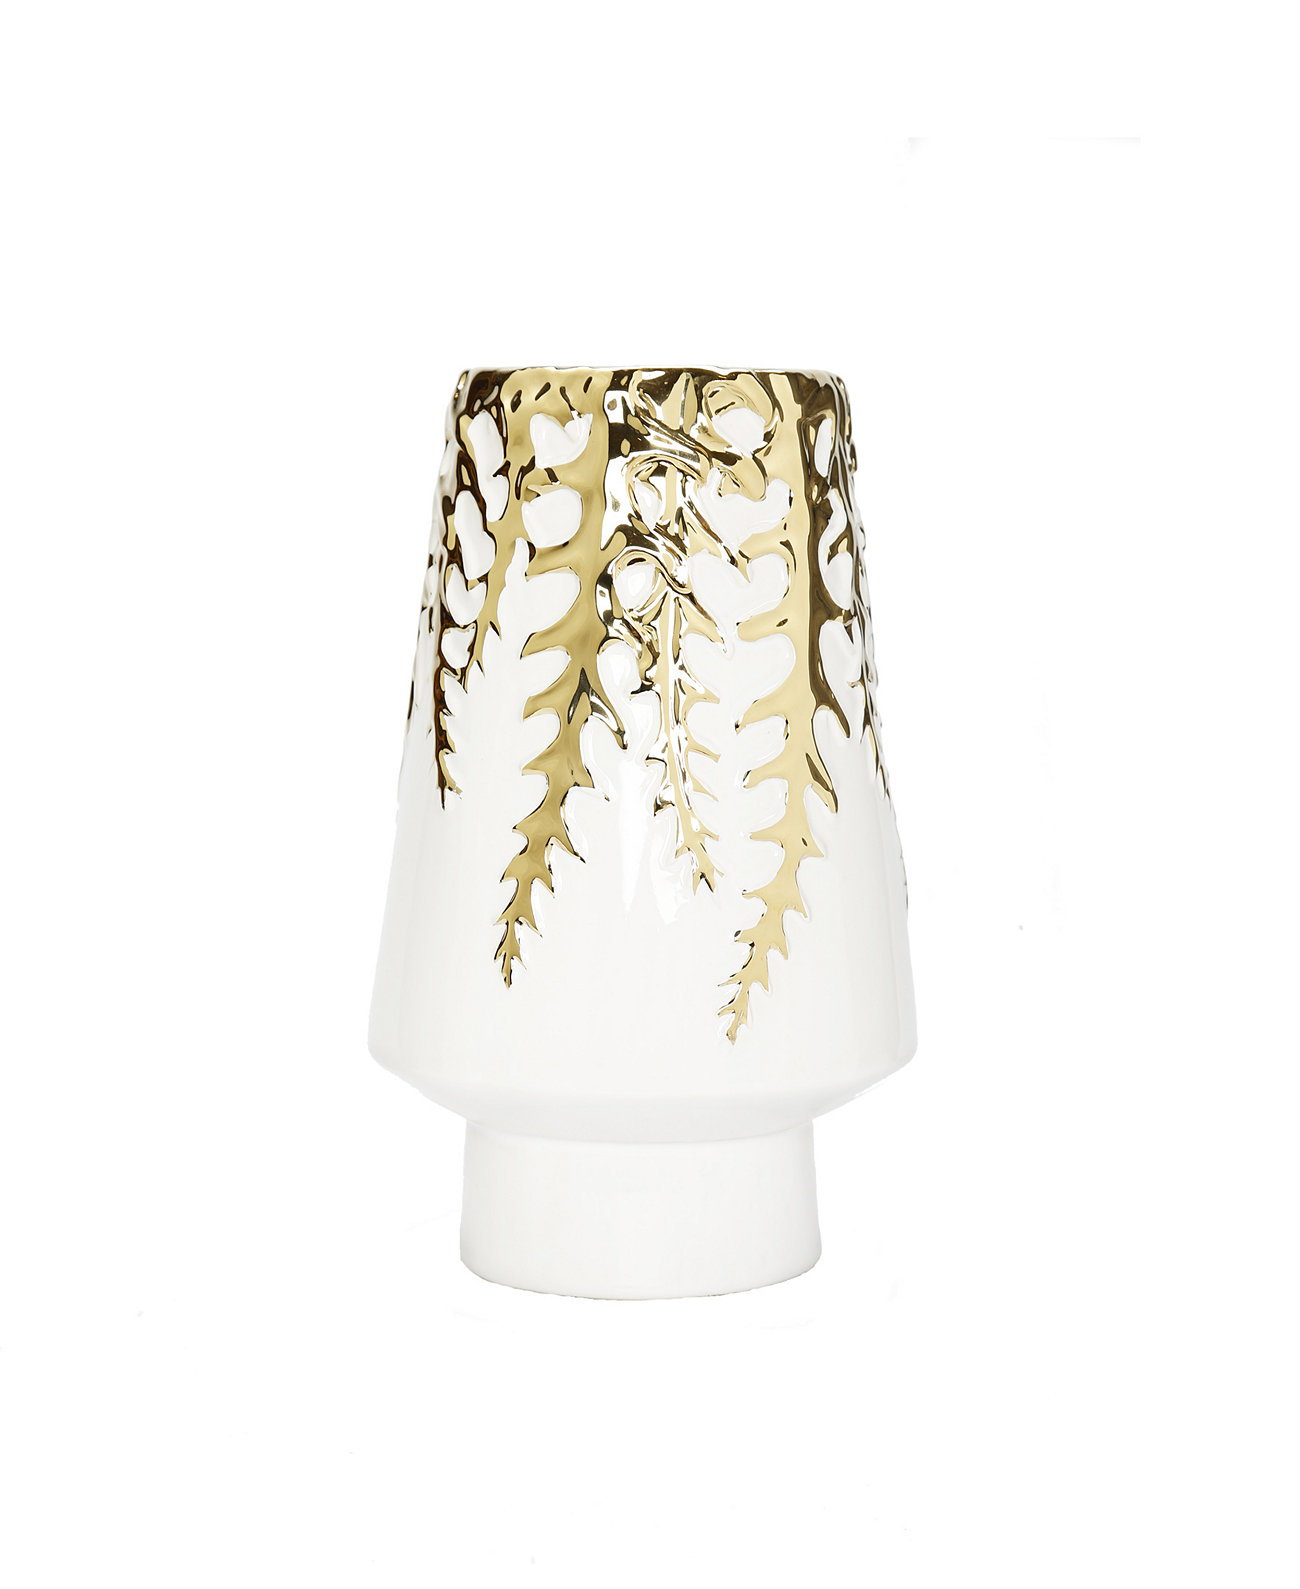 Белая керамическая ваза высотой 12 дюймов, золотистый дизайн Vivience